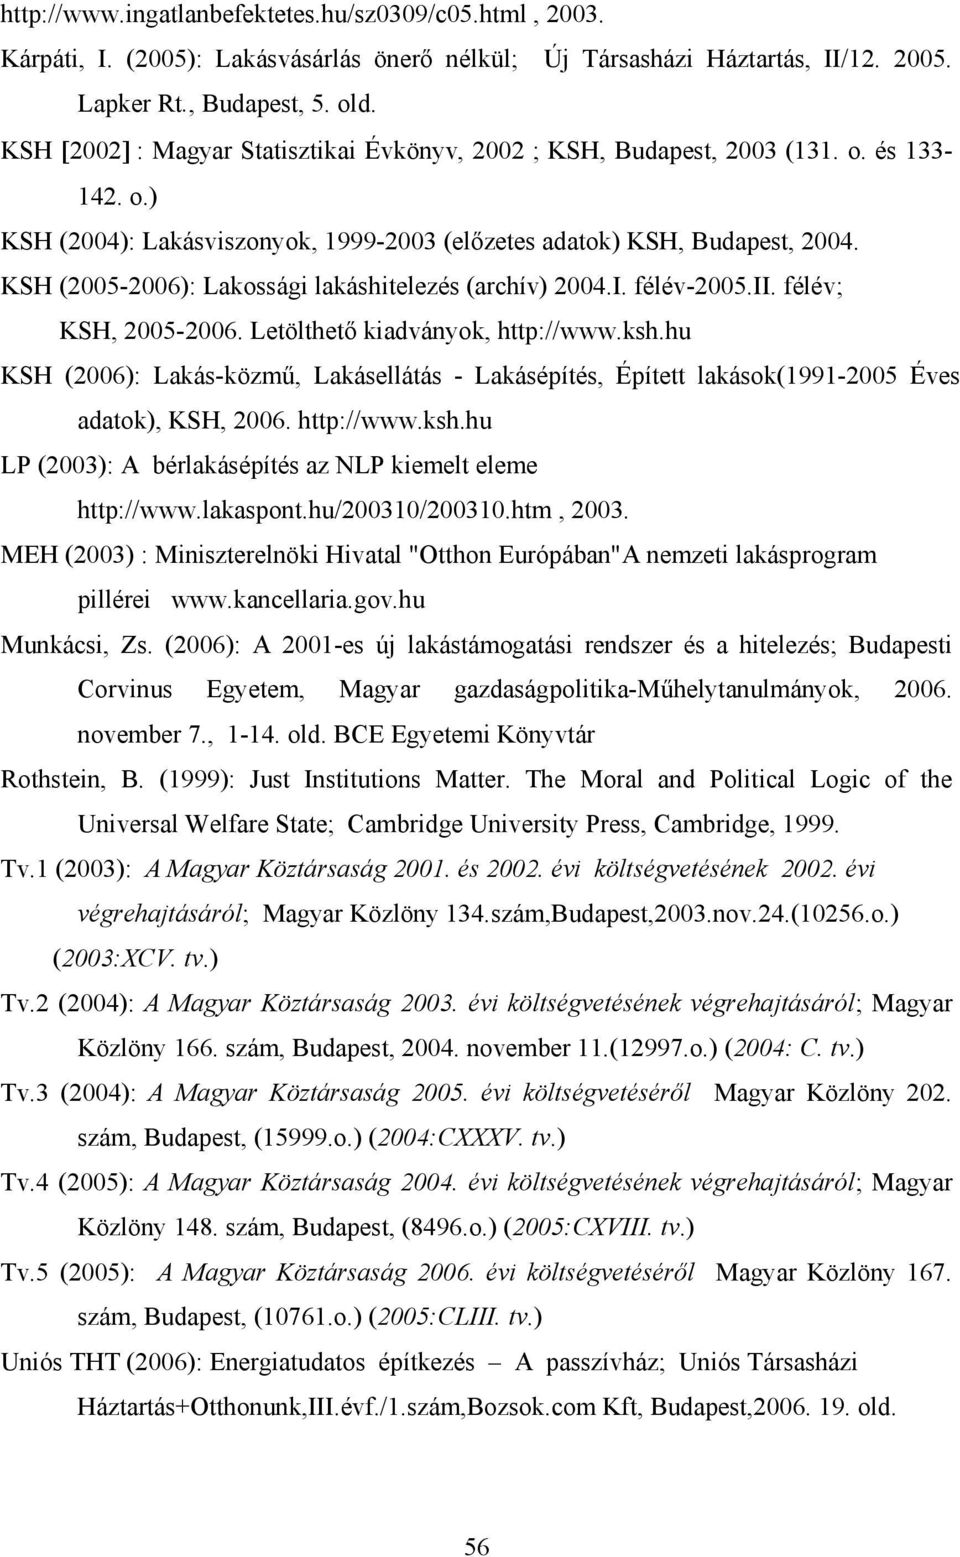 KSH (2005-2006): Lakossági lakáshitelezés (archív) 2004.I. félév-2005.ii. félév; KSH, 2005-2006. Letölthető kiadványok, http://www.ksh.